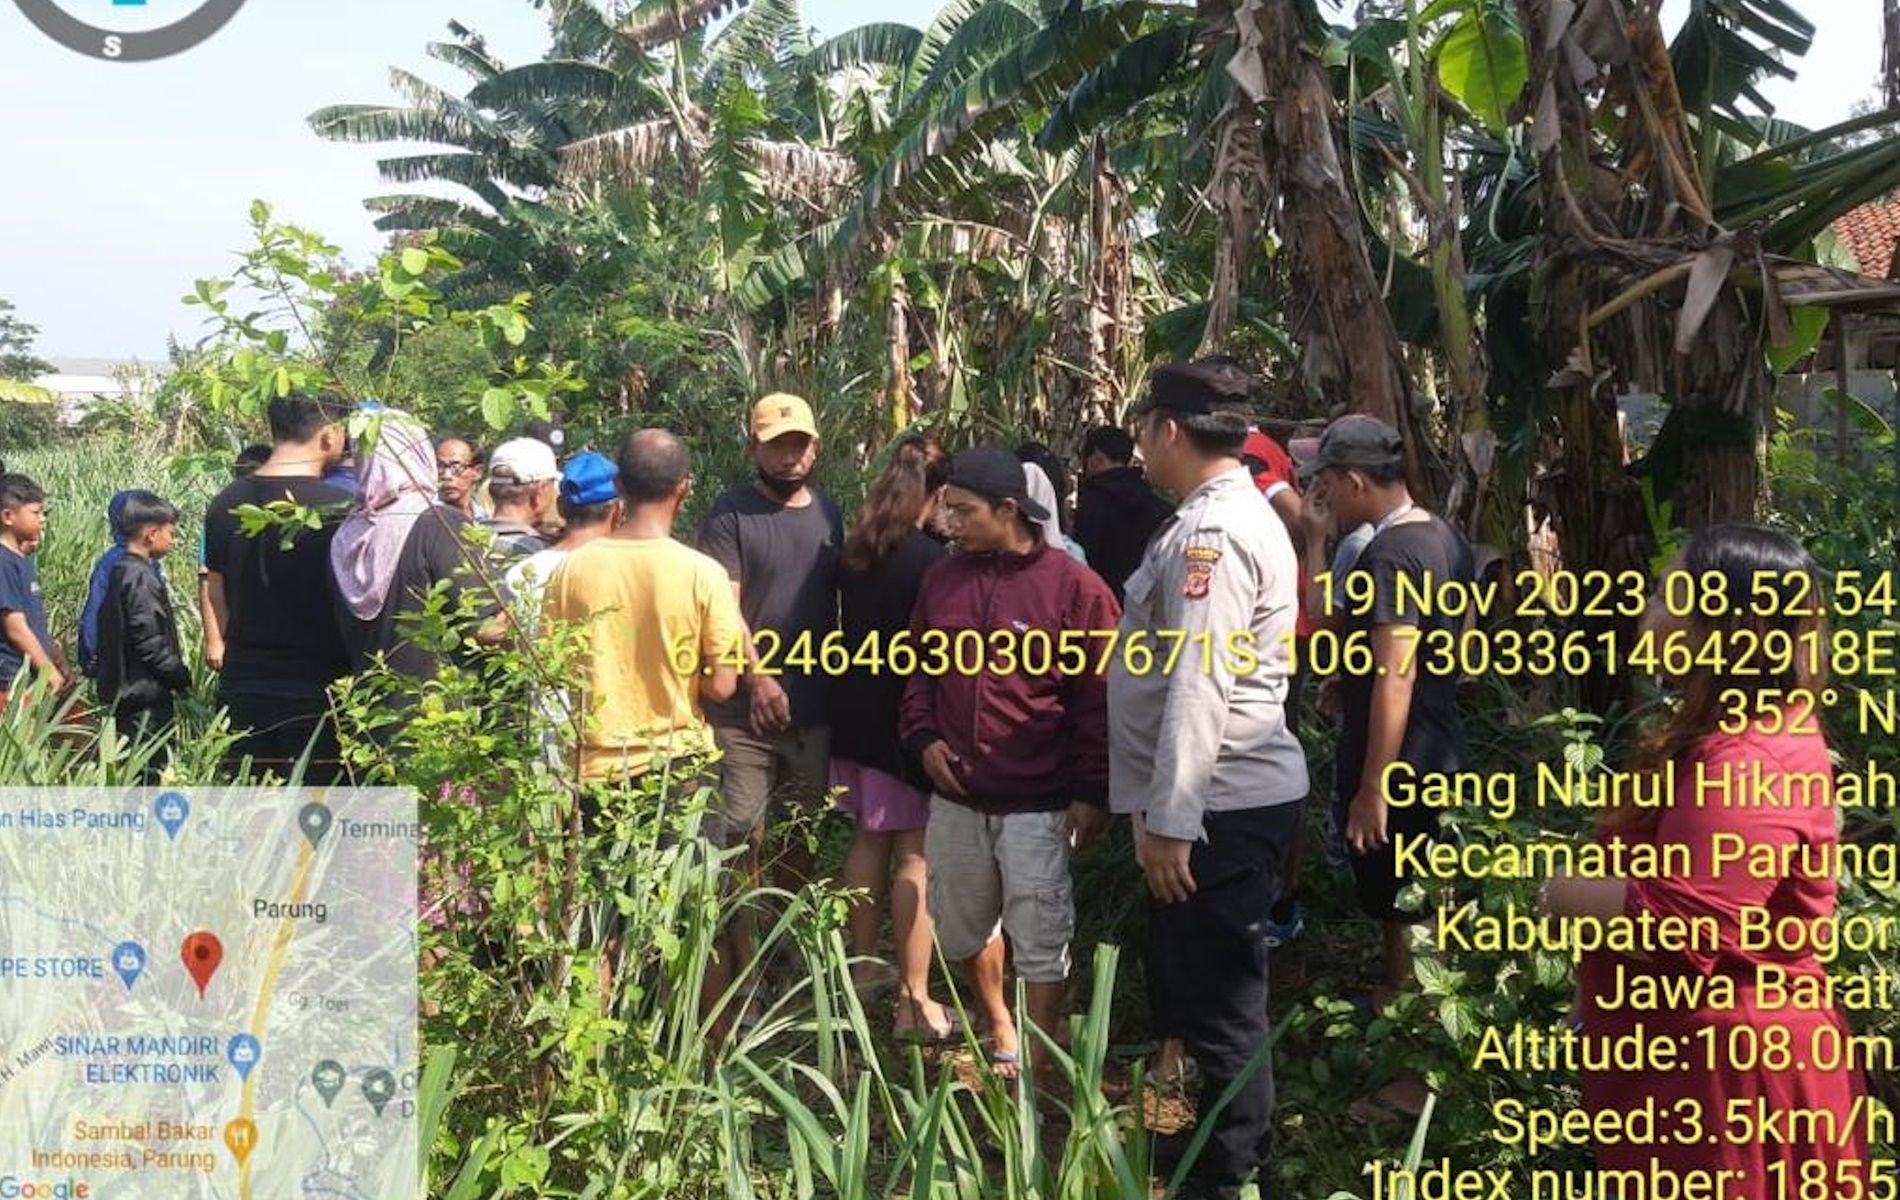 Pria bernama Wawas Sarwono (65) ditemukan tewas dalam lahan kosong di wilayah Parung, Kabupaten Bogor, Jawa Barat.